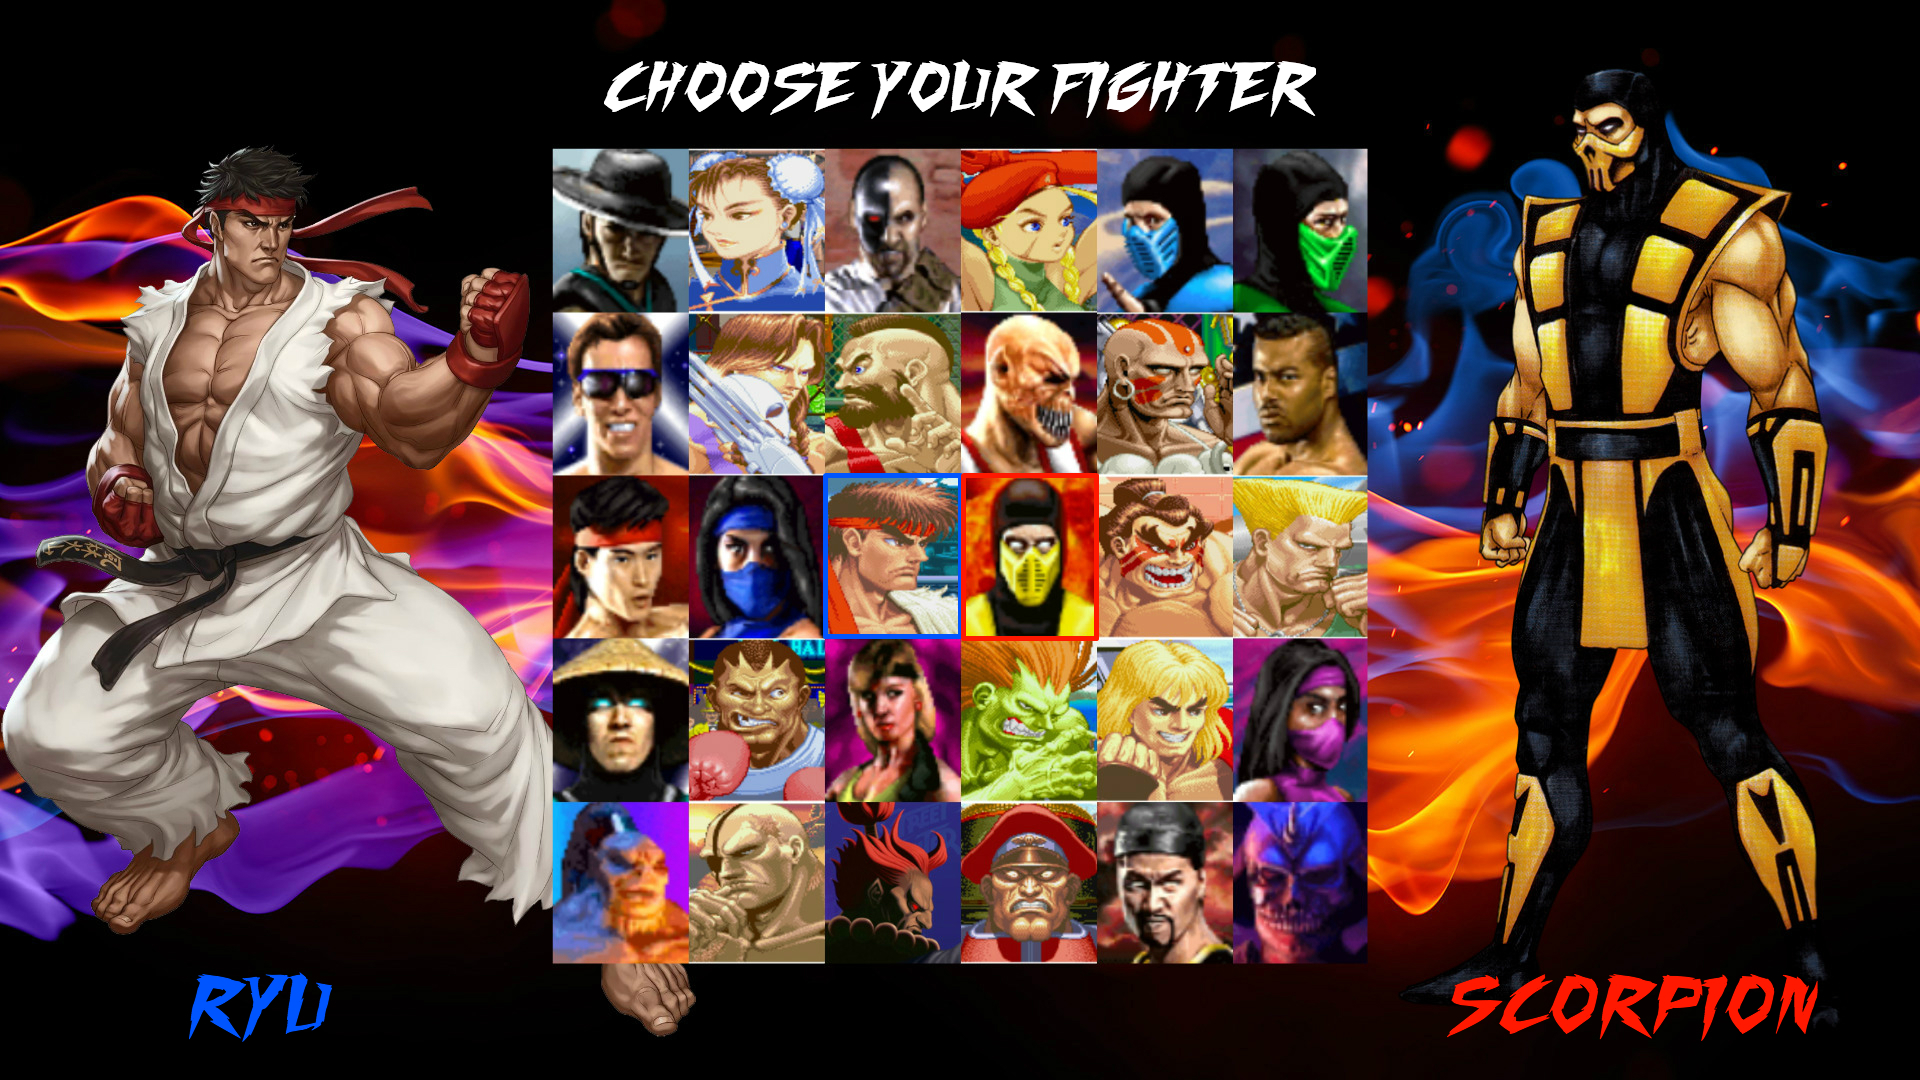 Mortal Kombat VS. Street Fighter